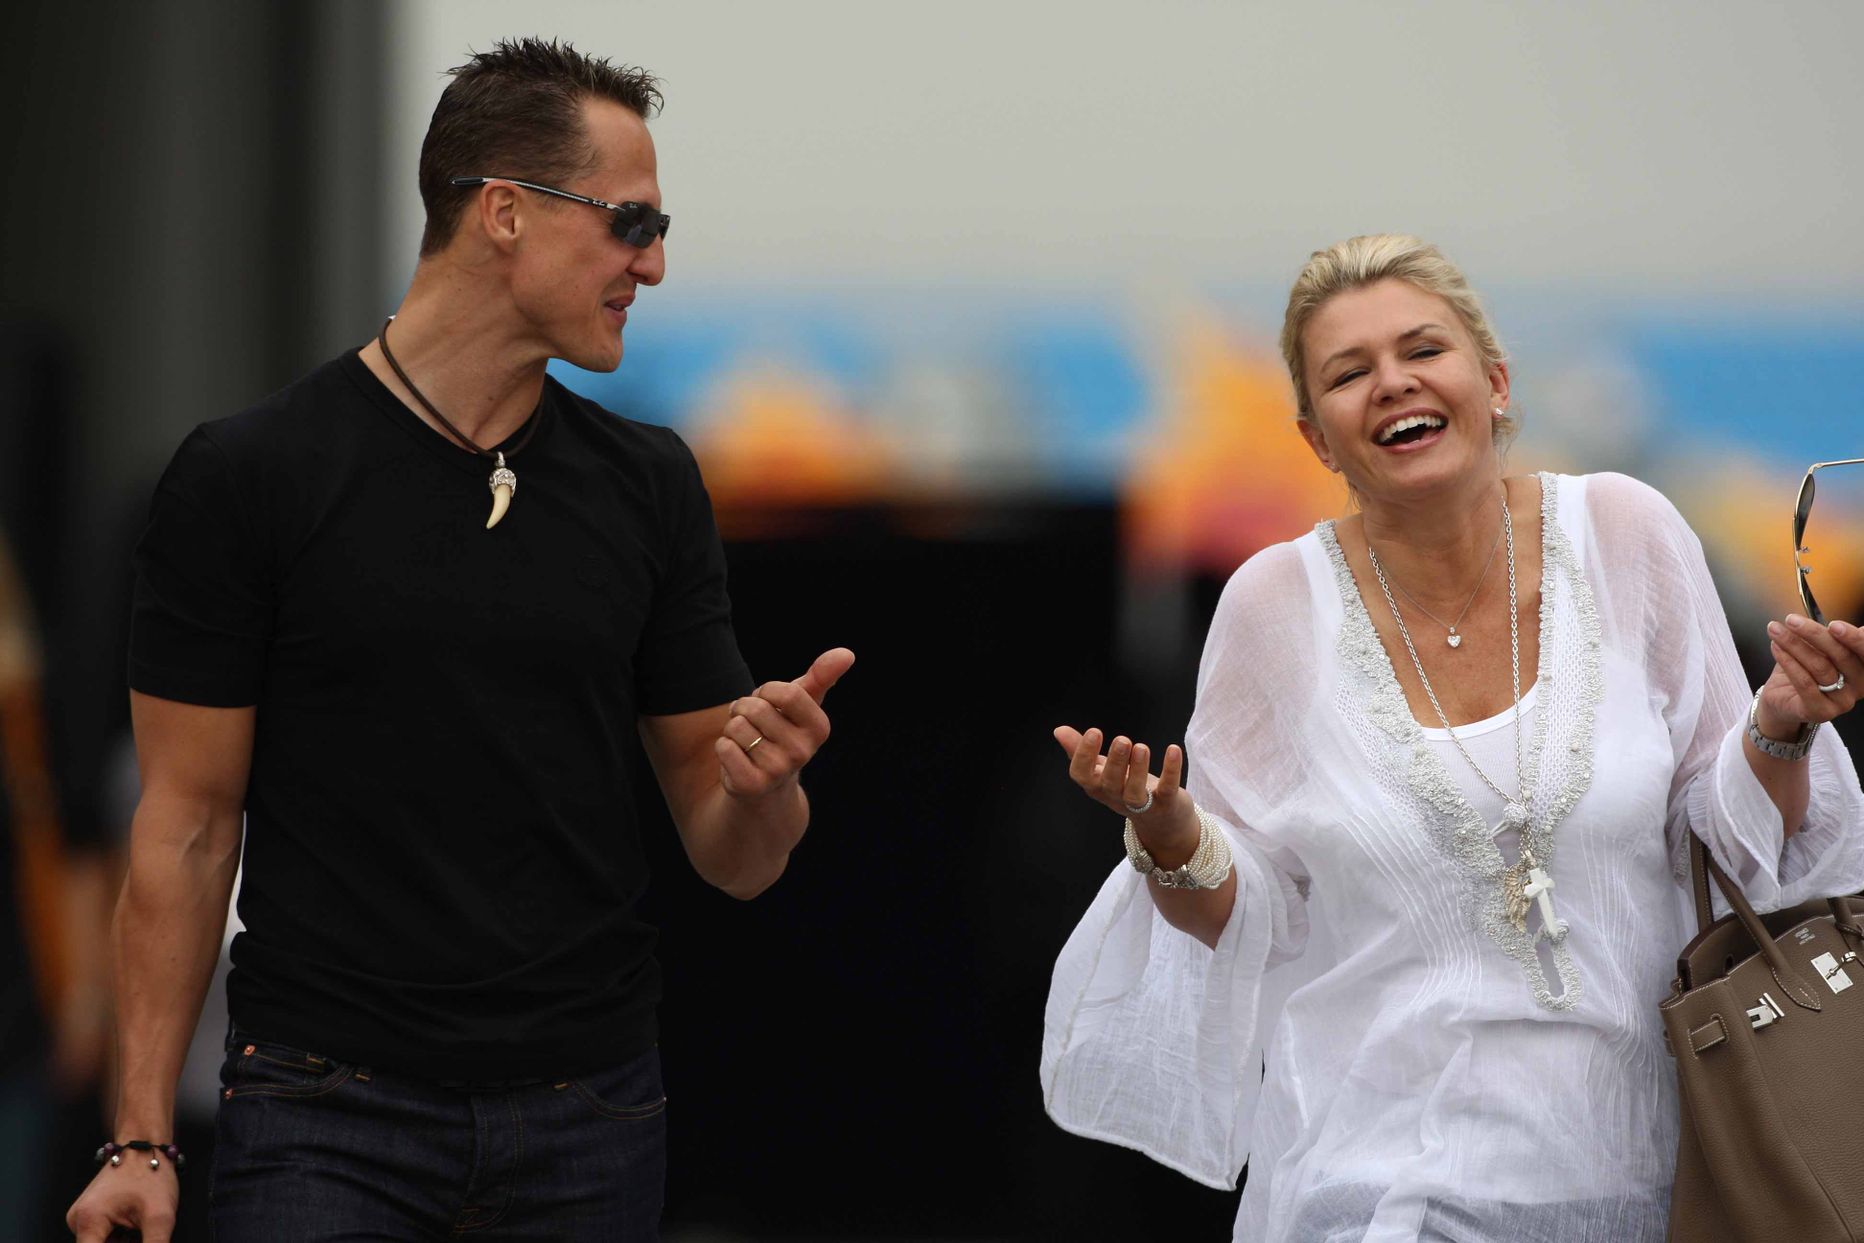 Michael ja Corinna Schumacher õnnlikematel aegadel. Siin pildil 2010